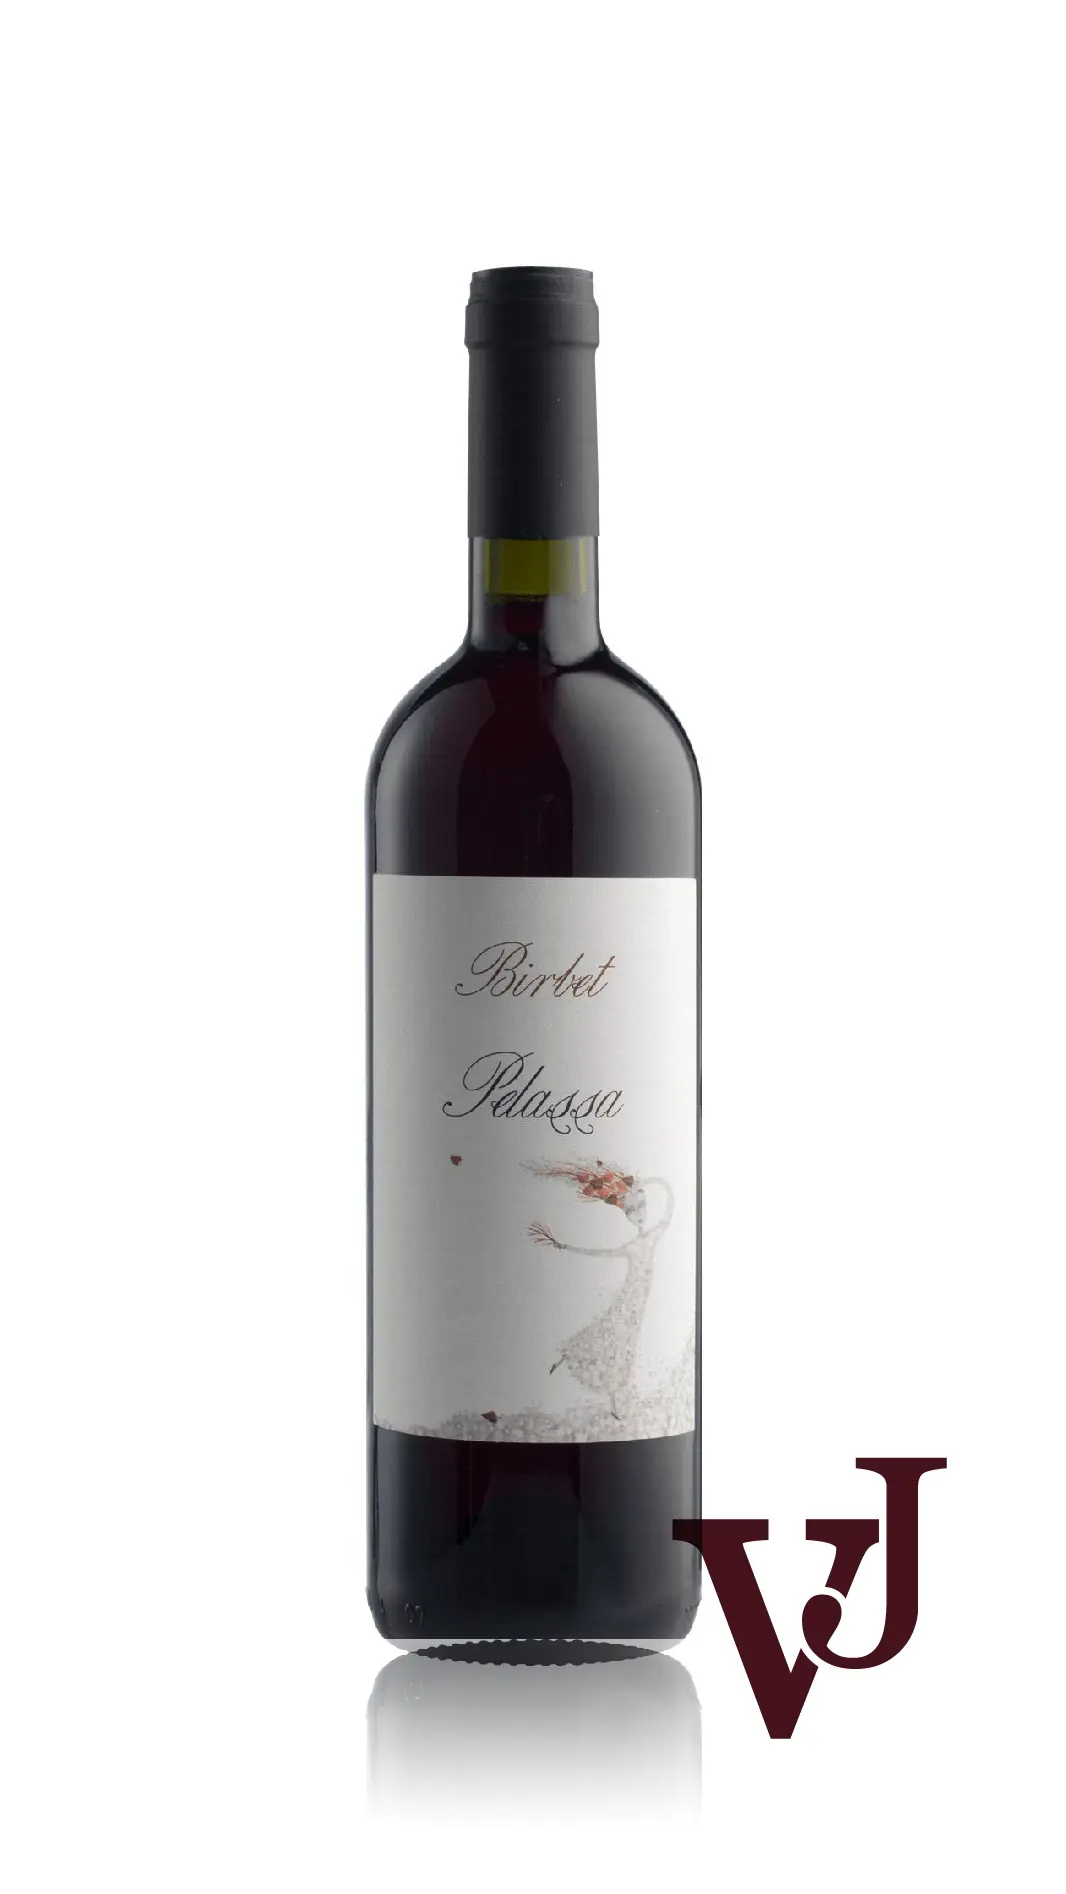 Rött Vin - Brachetto Birbet Pelassa artikel nummer 5402301 från producenten Azienda Agricola Daniele Pelassa från området Italien - Vinjournalen.se